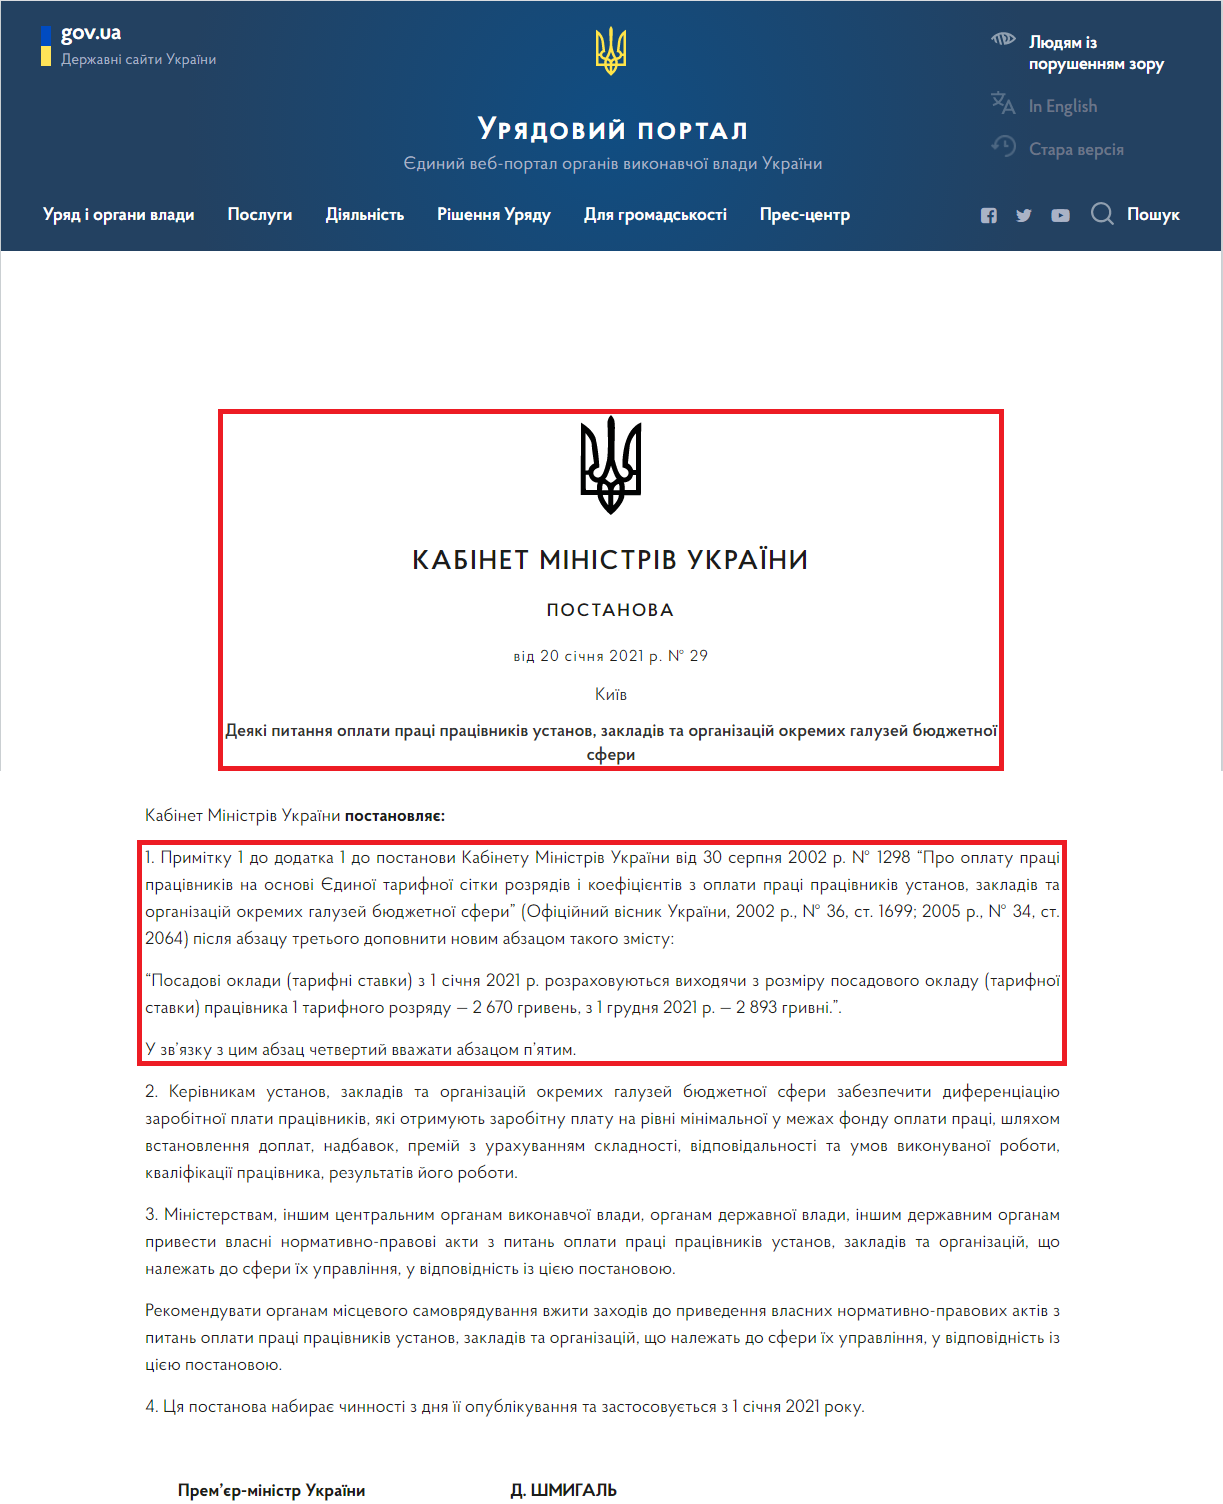 https://www.kmu.gov.ua/npas/deyaki-pitannya-oplati-praci-pracivnikiv-ustanov-zakladiv-ta-organizacij-okremih-galuzej-byudzhetnoyi-t200121